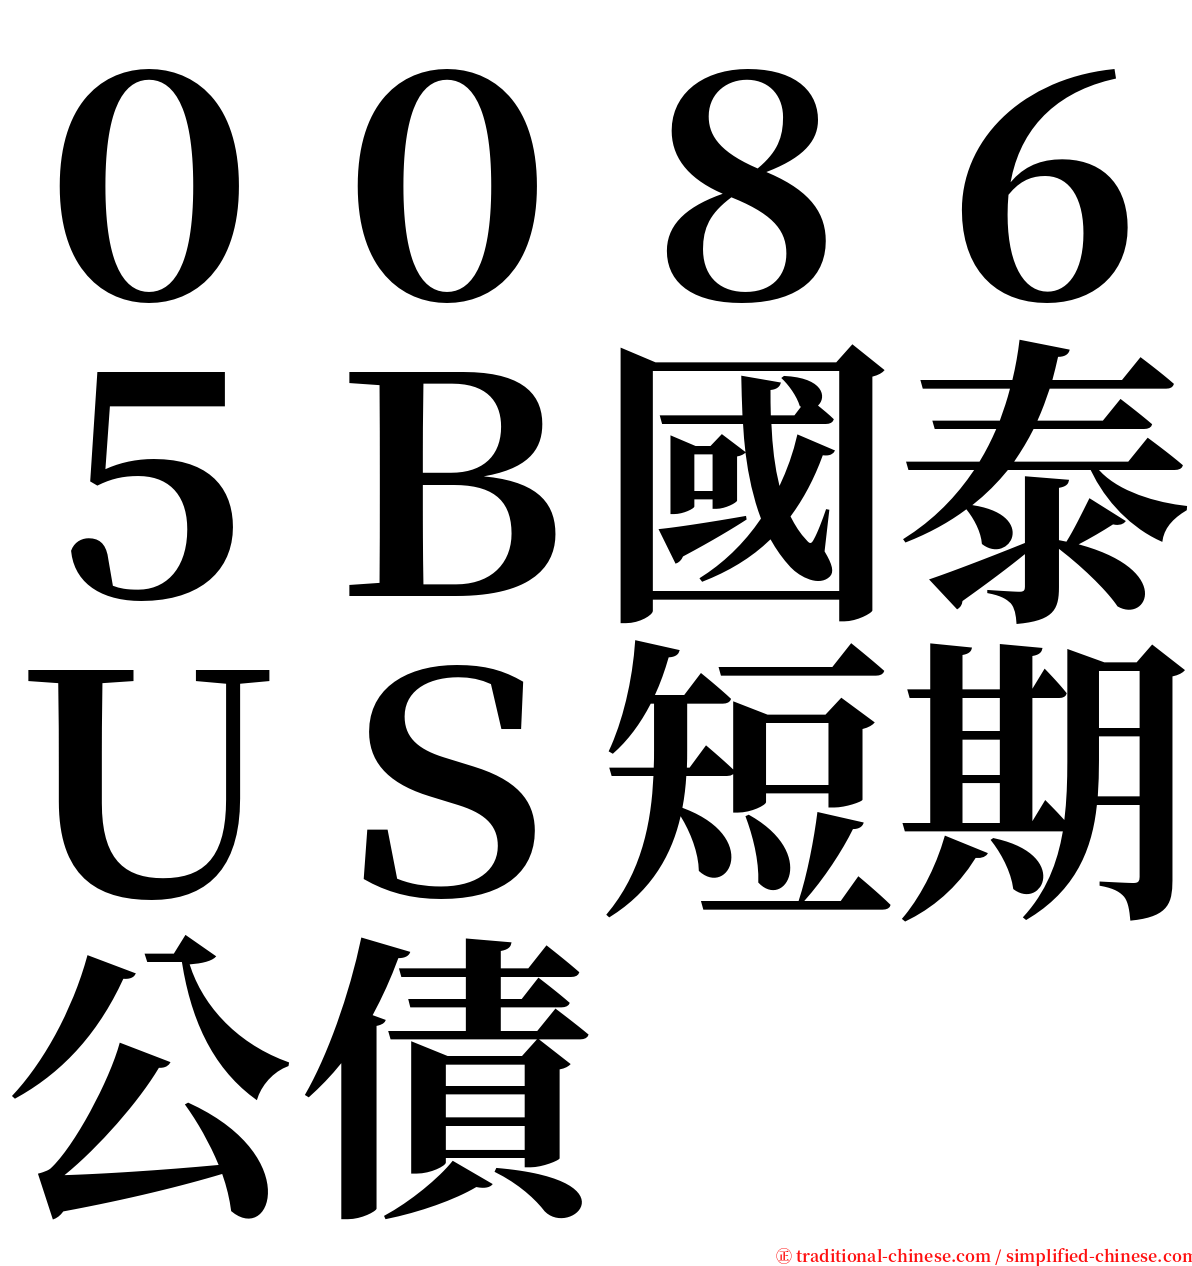 ００８６５Ｂ國泰ＵＳ短期公債 serif font